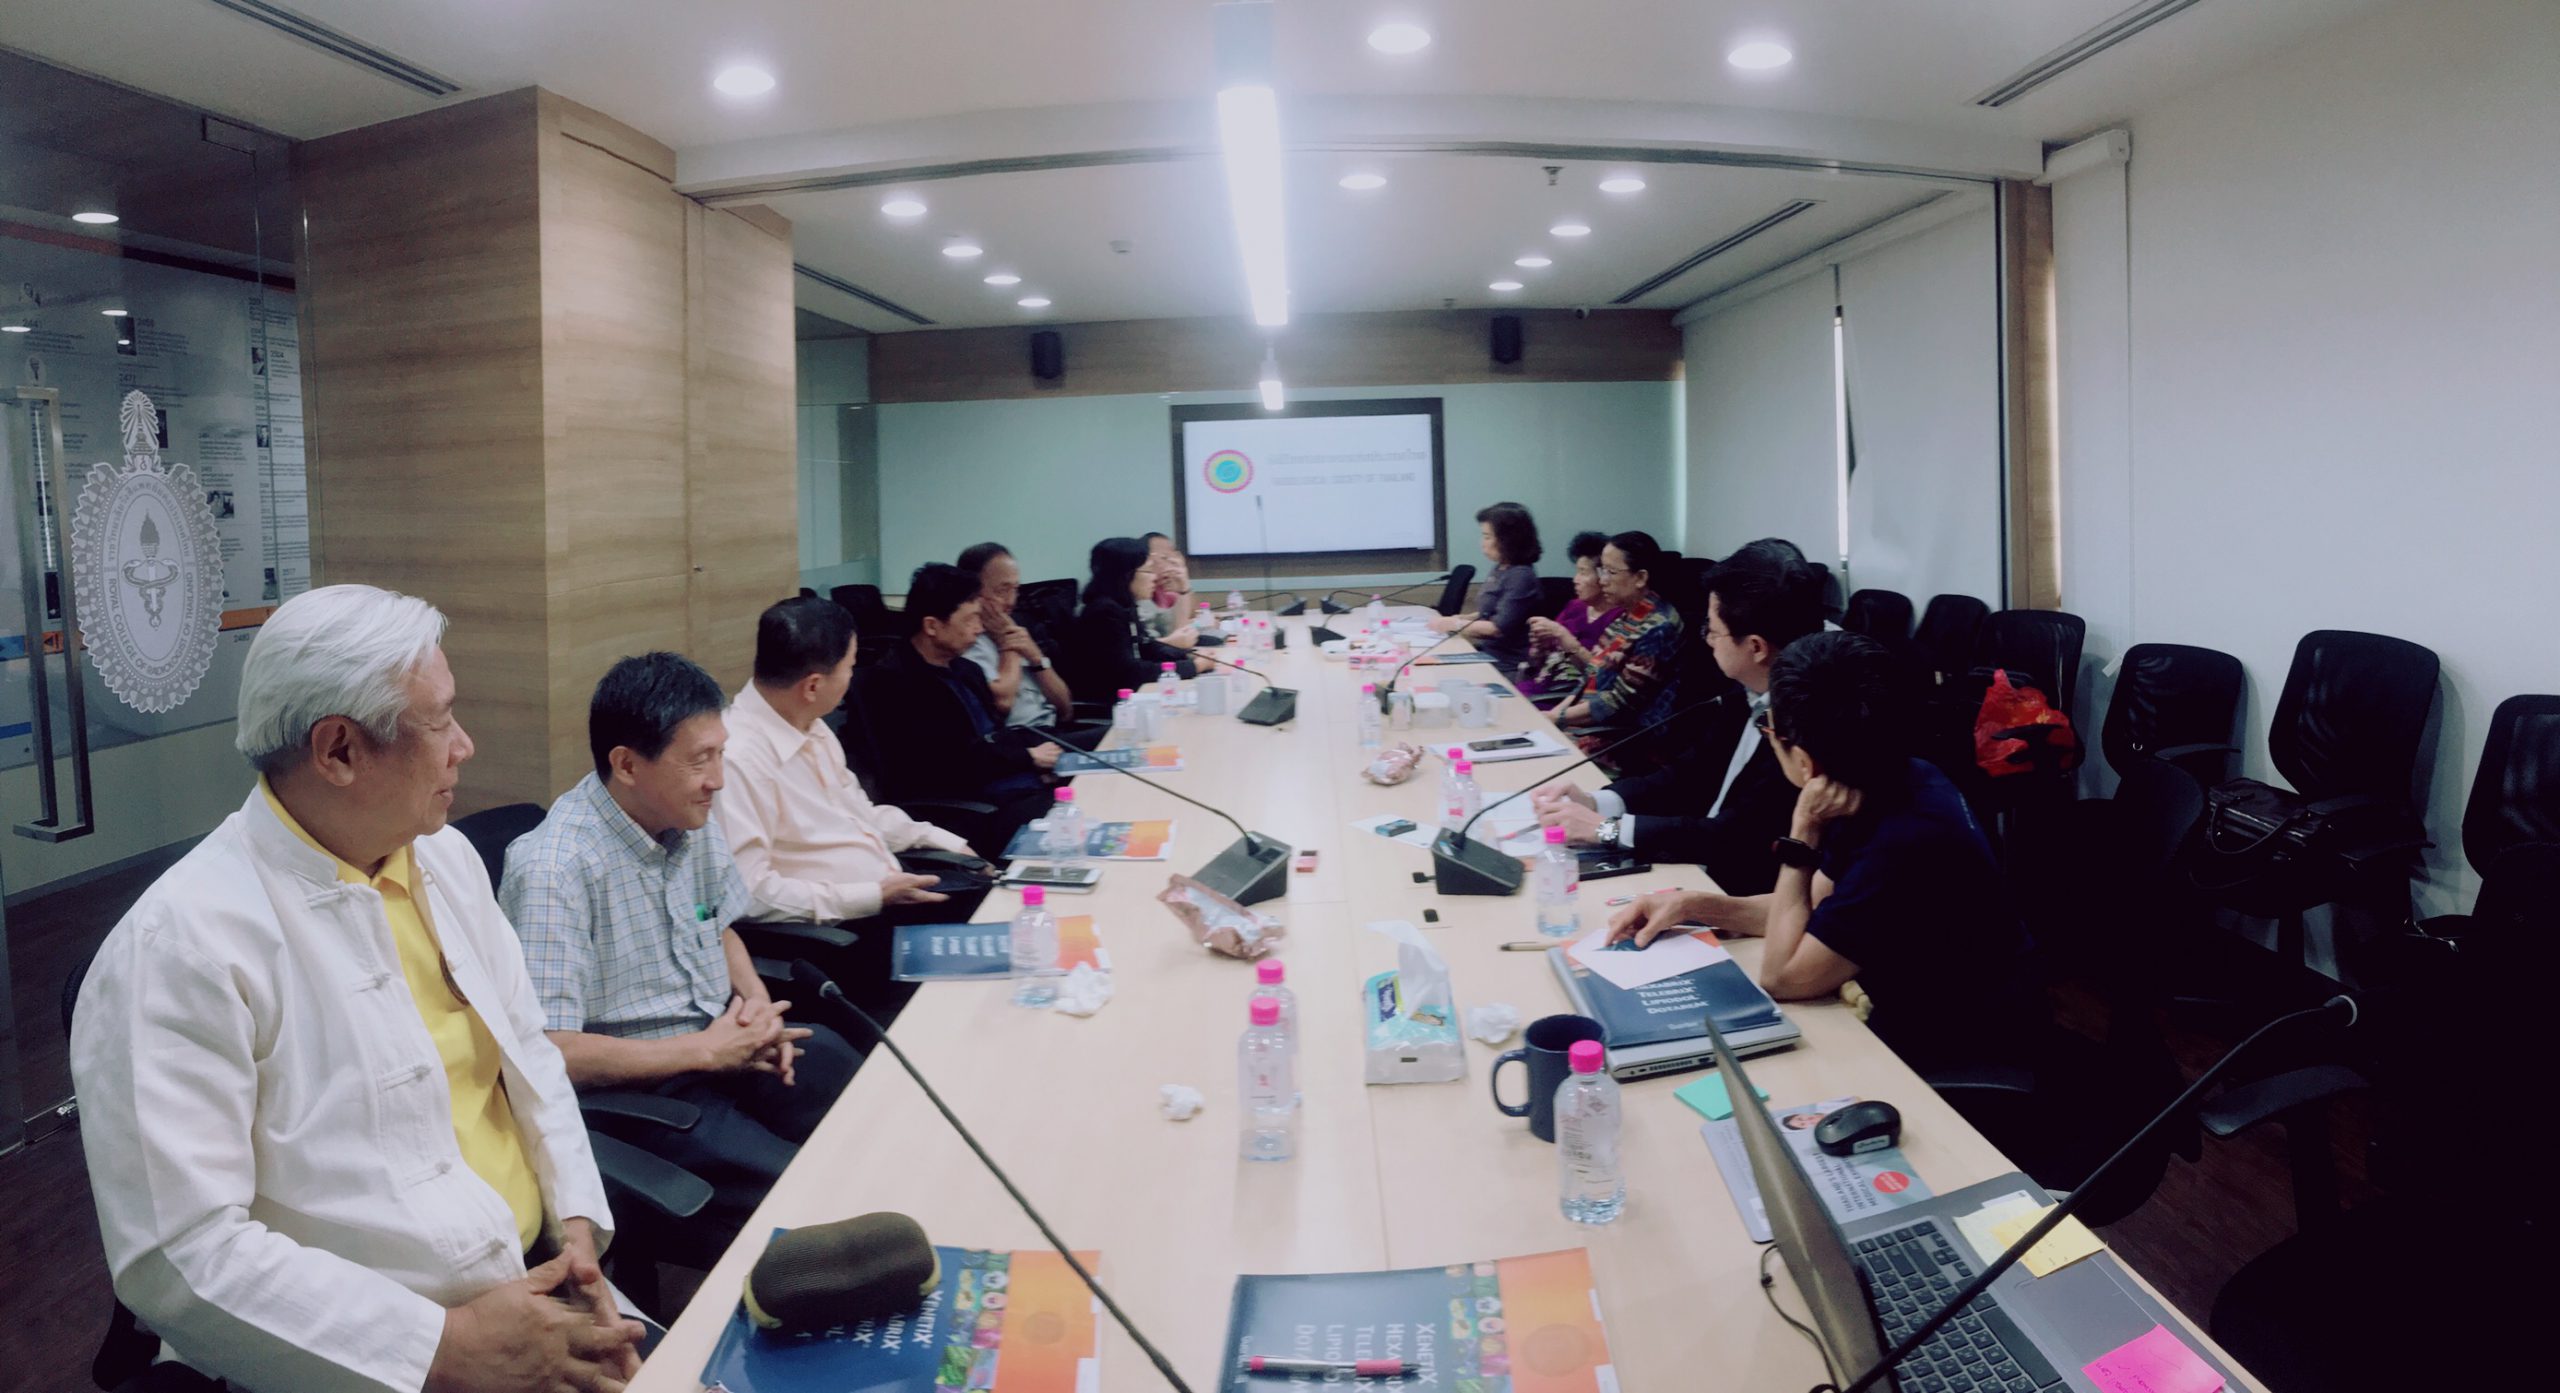 การประชุมคณะกรรมการอำนวยการรังสีวิทยาสมาคมแห่งประเทศไทย ร่วมกับคณะกรรมการกลาง ในวันที่ 20 กุมภาพันธ์ 2563 23